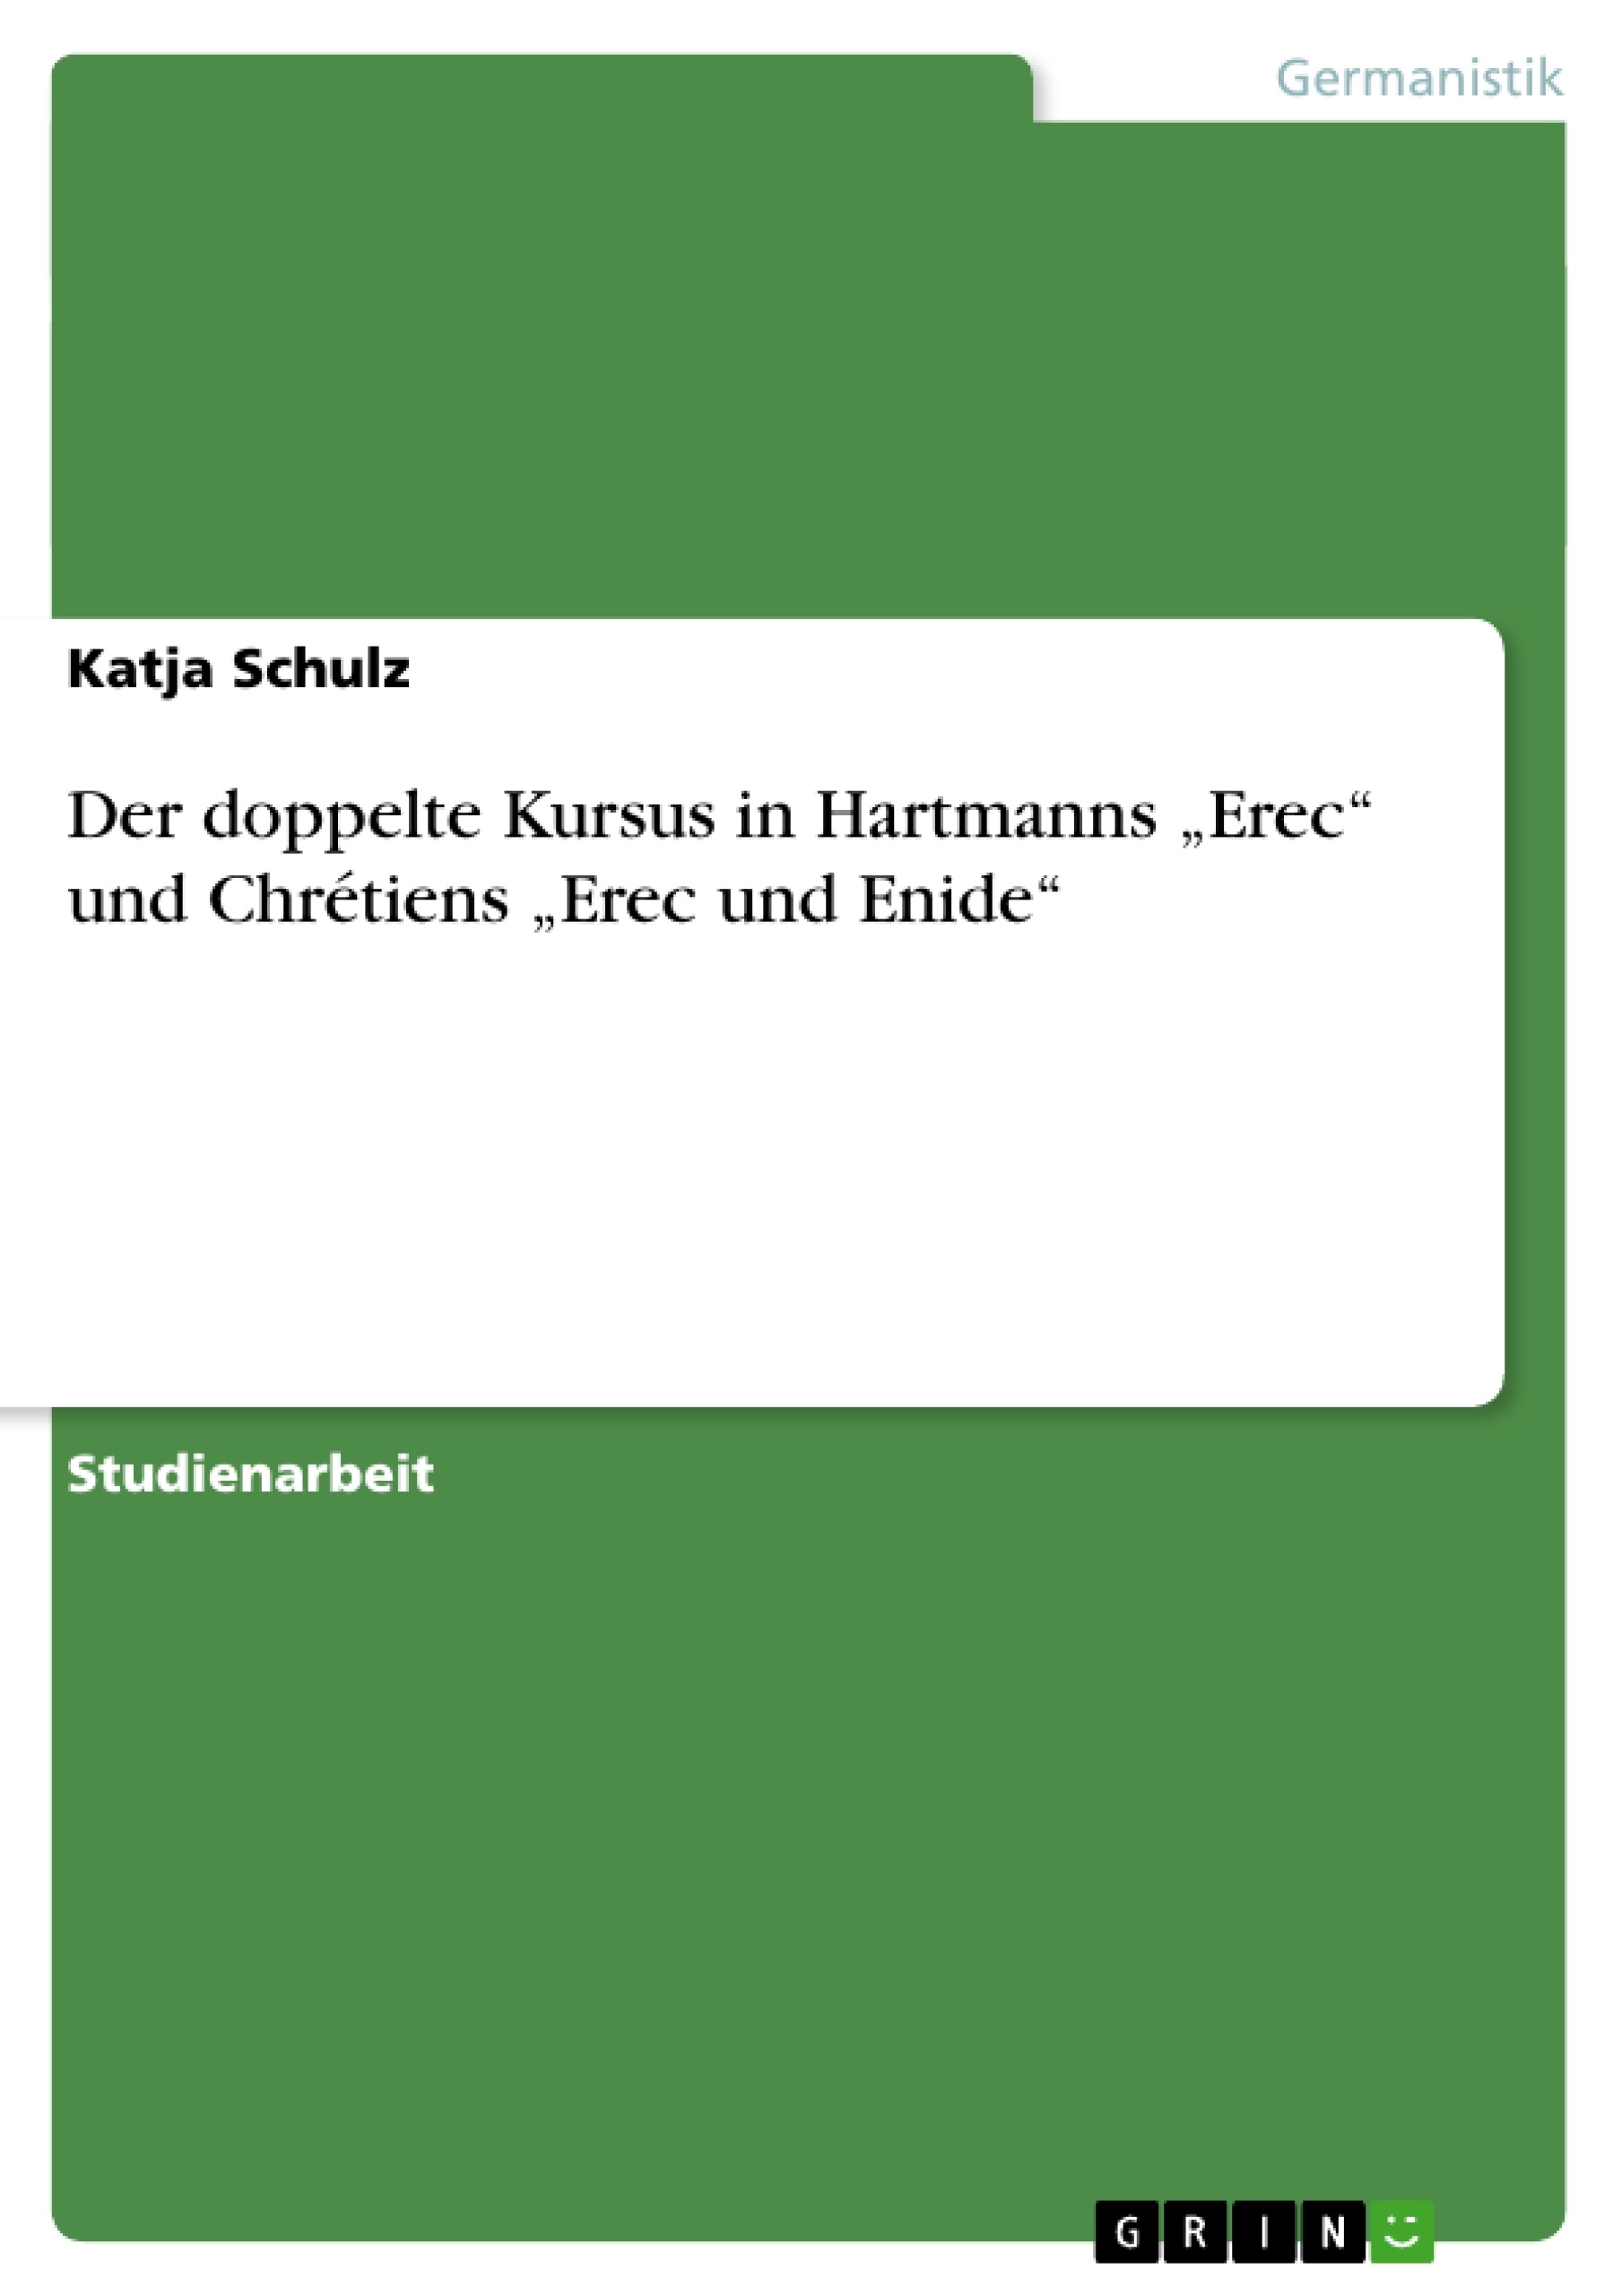 Título:  Der doppelte Kursus in Hartmanns „Erec“ und Chrétiens „Erec und Enide“